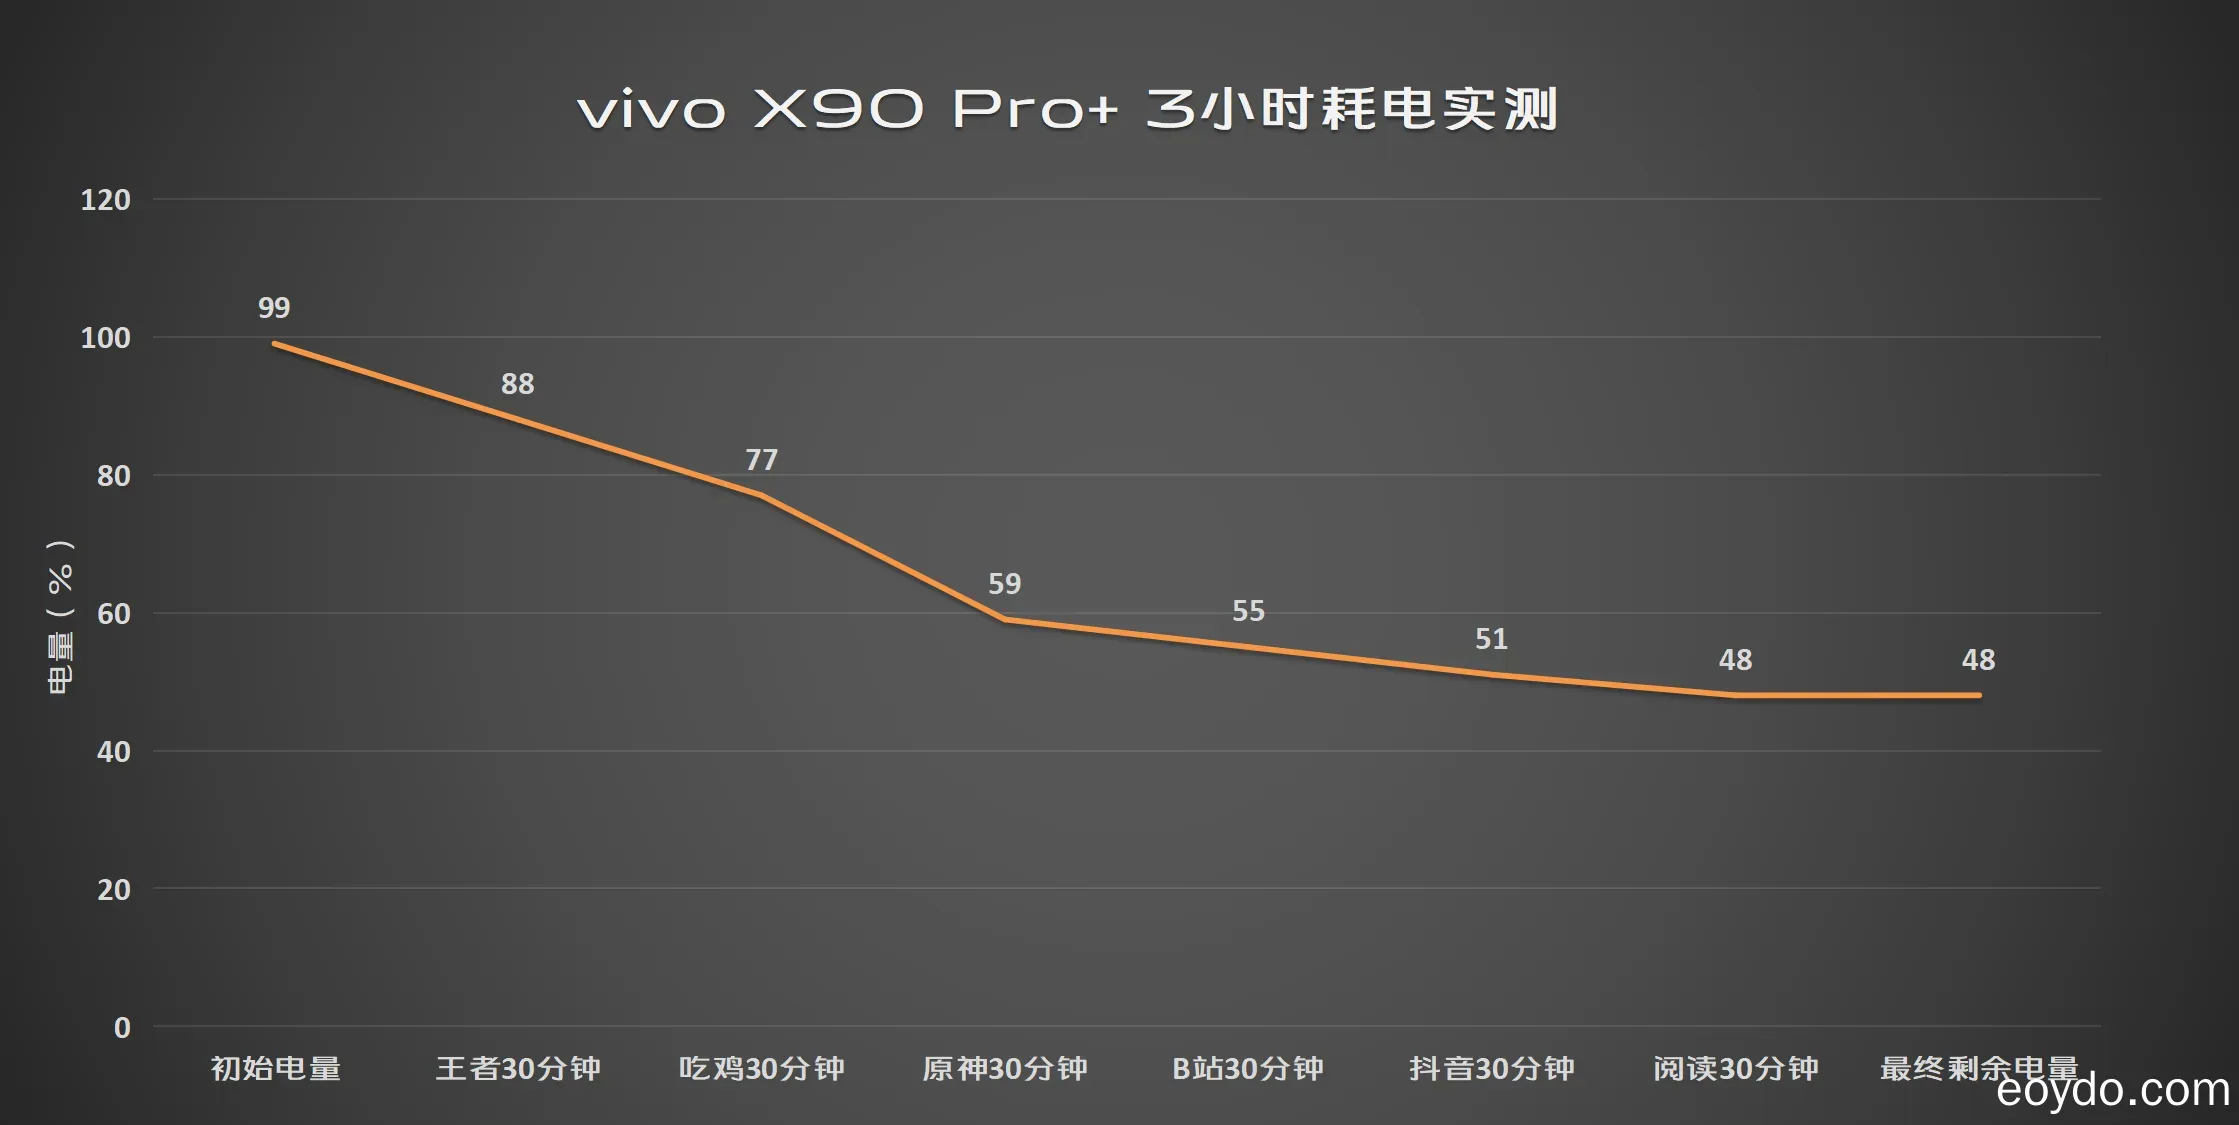 vivo X90 Pro+ recension